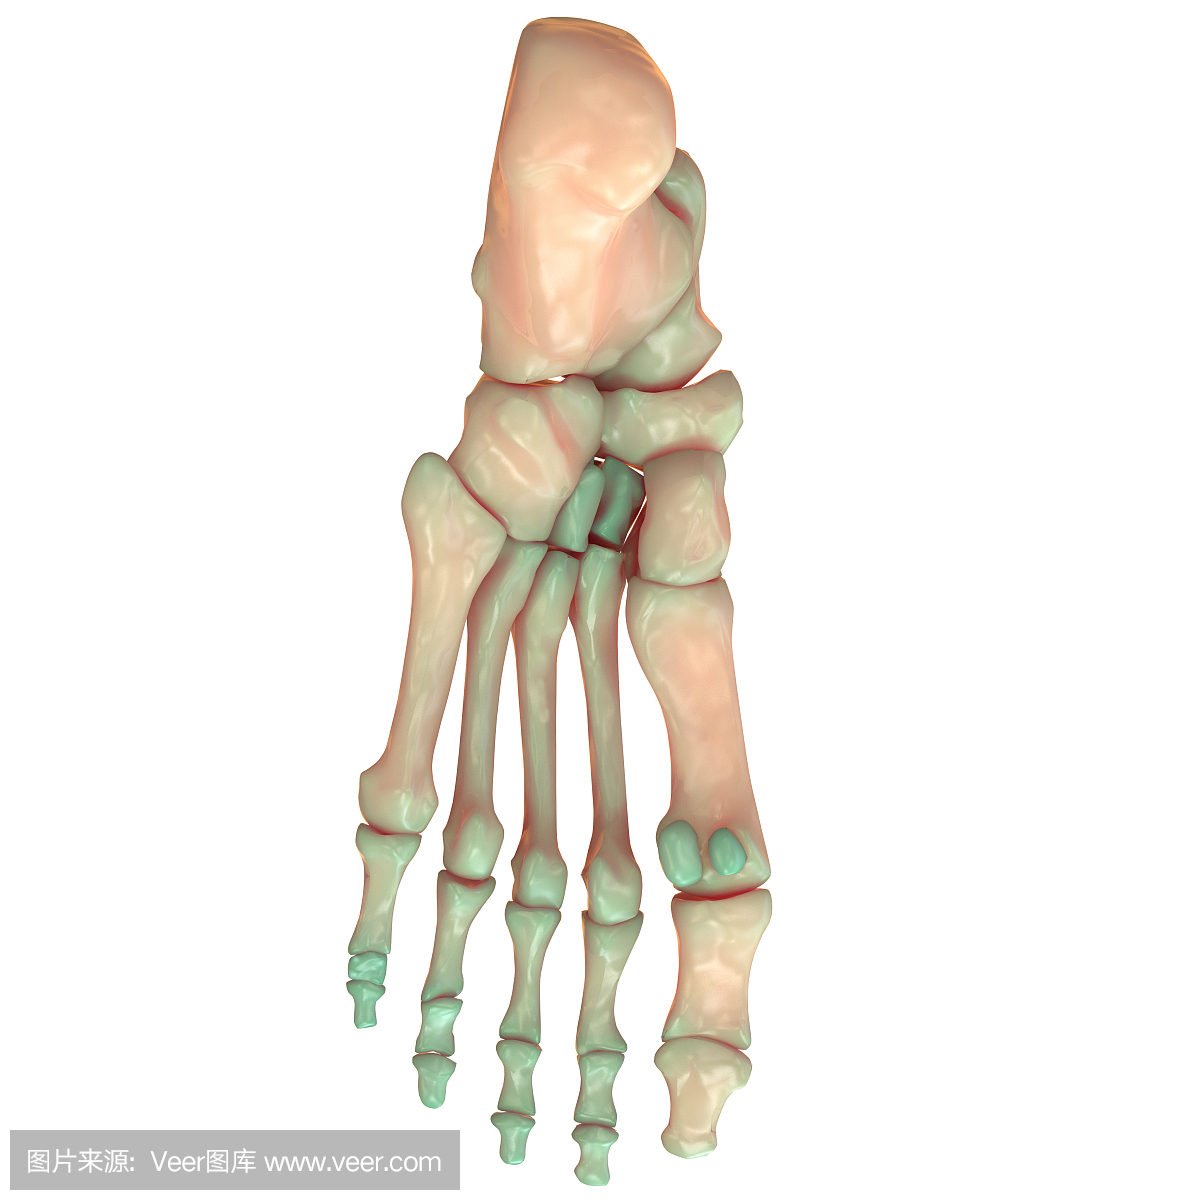 人体骨骼系统足部关节解剖学(后视图)